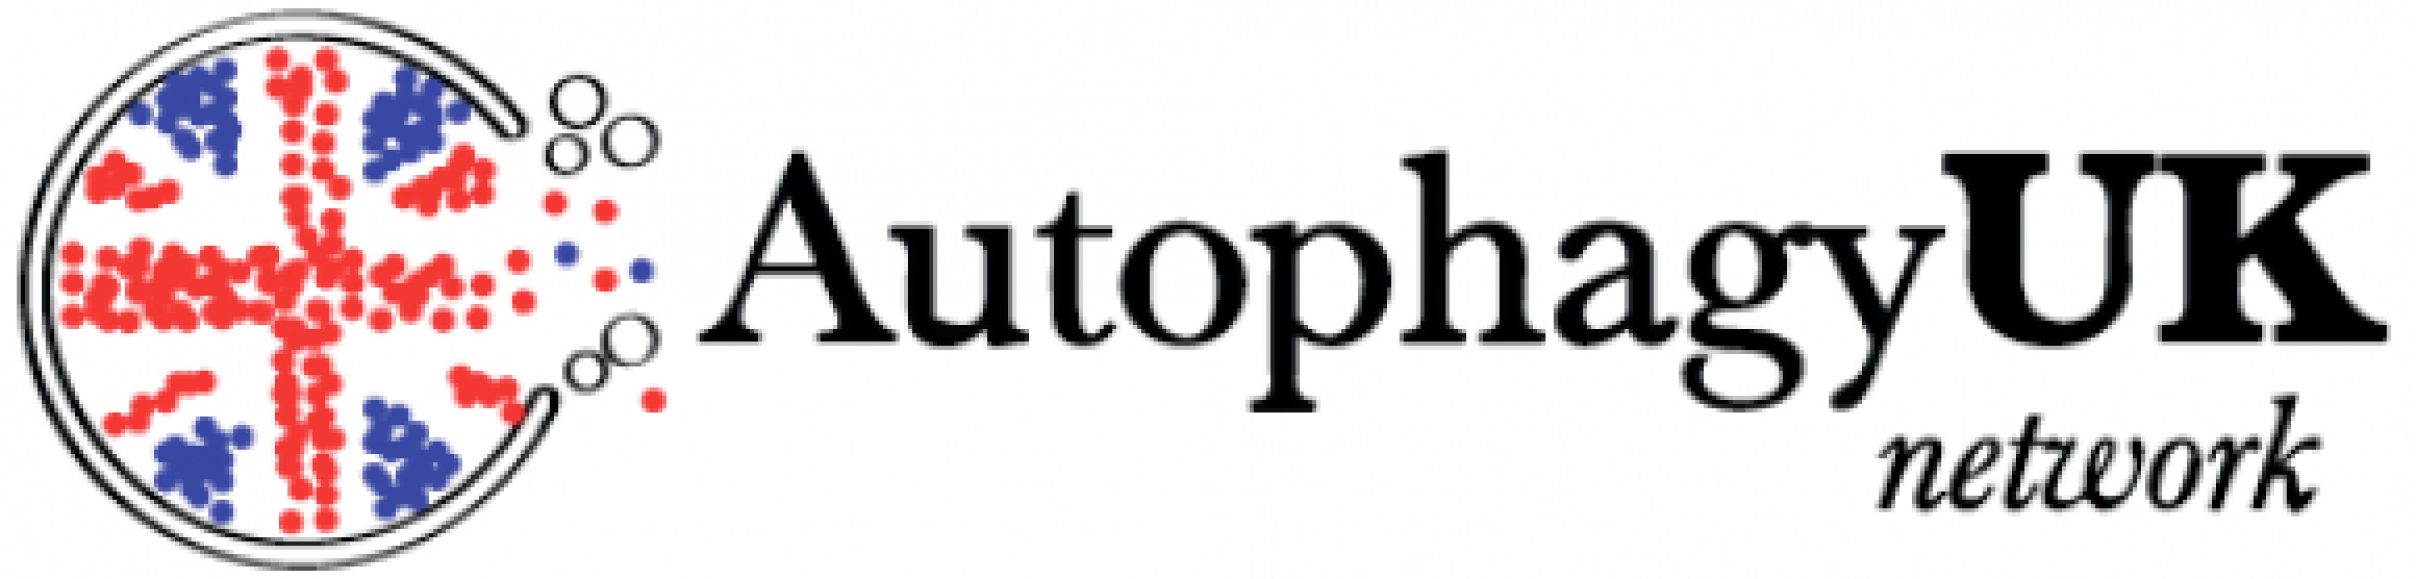 Autophagy UK Network logo